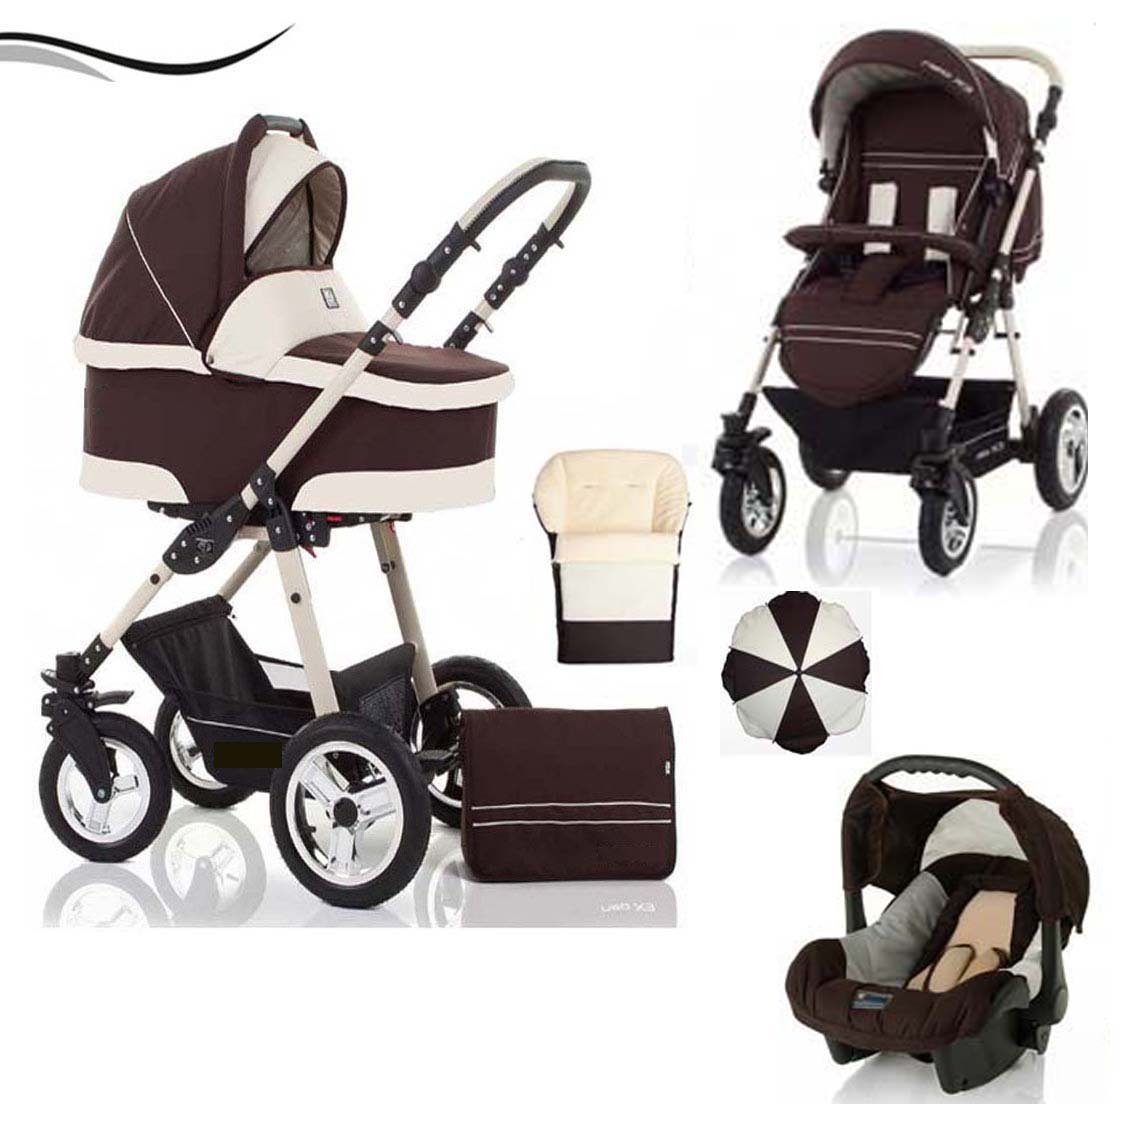 babies-on-wheels Kombi-Kinderwagen City Star 5 in 1 inkl. Autositz, Sonnenschirm und Fußsack - 18 Teile - von Geburt bis 4 Jahre in 16 Farben Braun-Creme